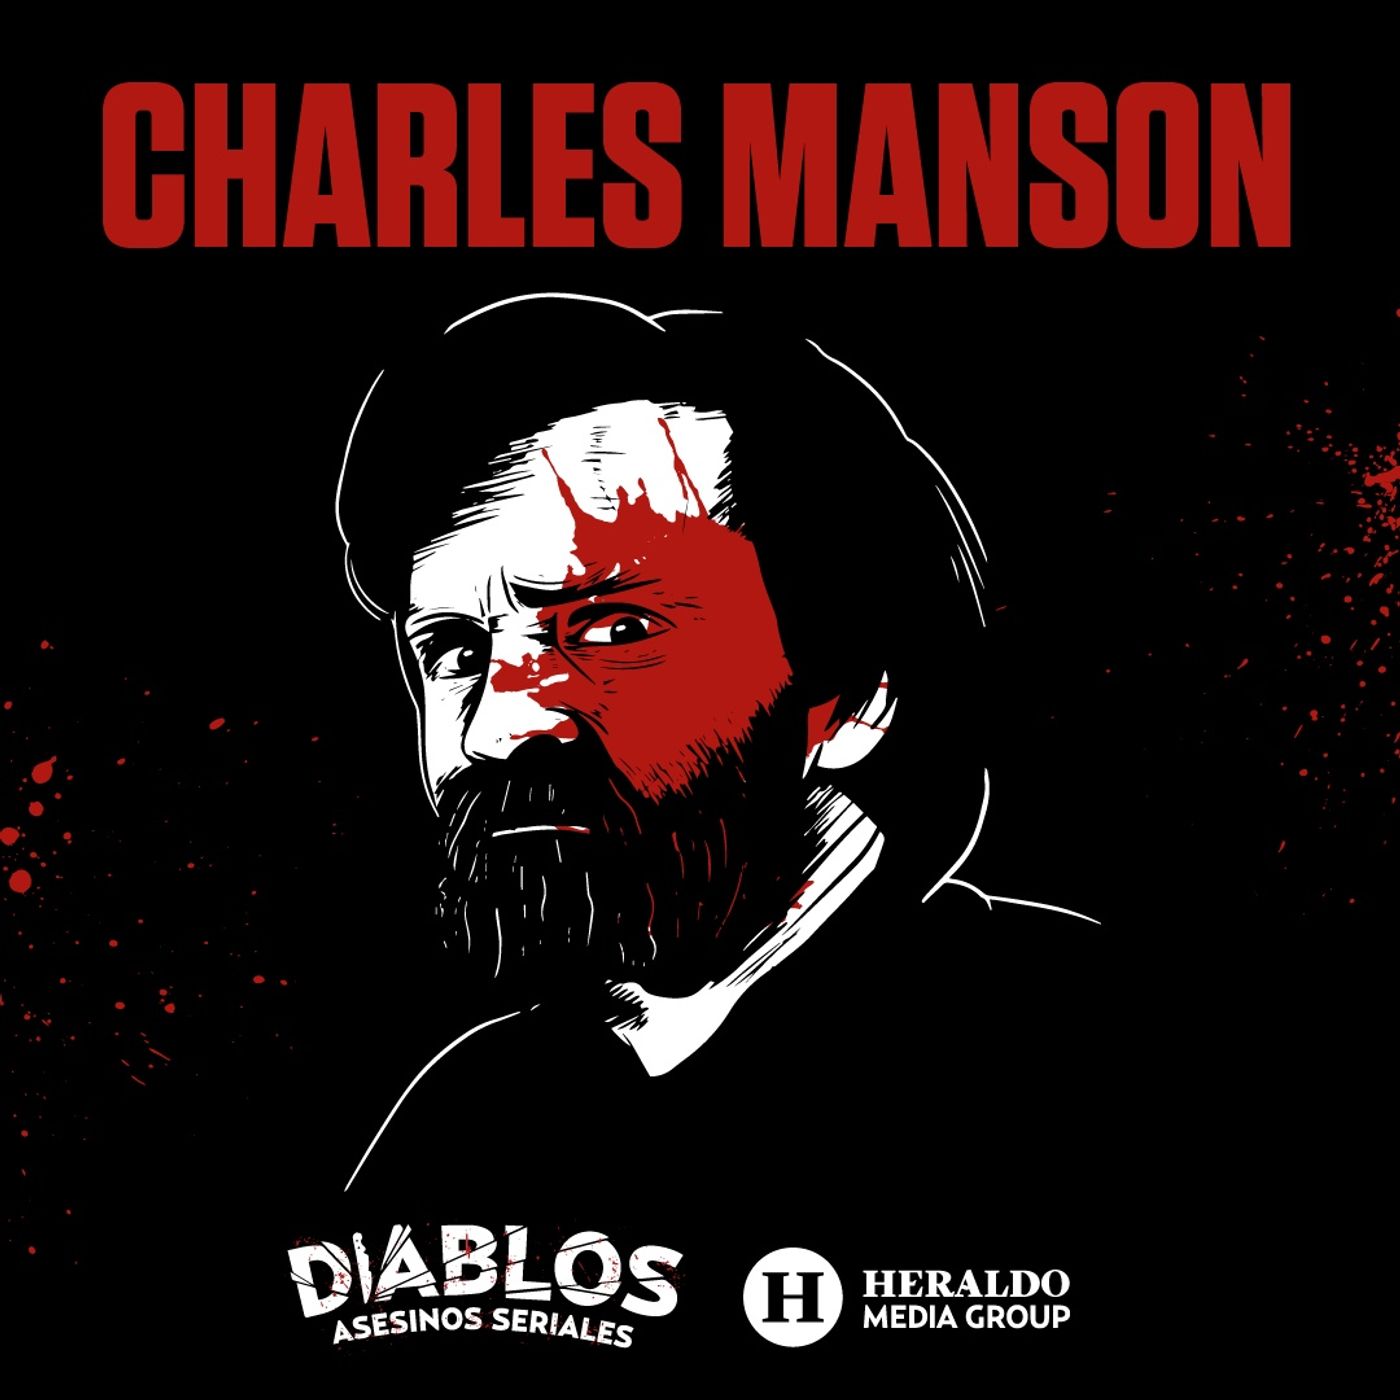 Charles Manson: El macabro líder de la familia Manson | Diablos